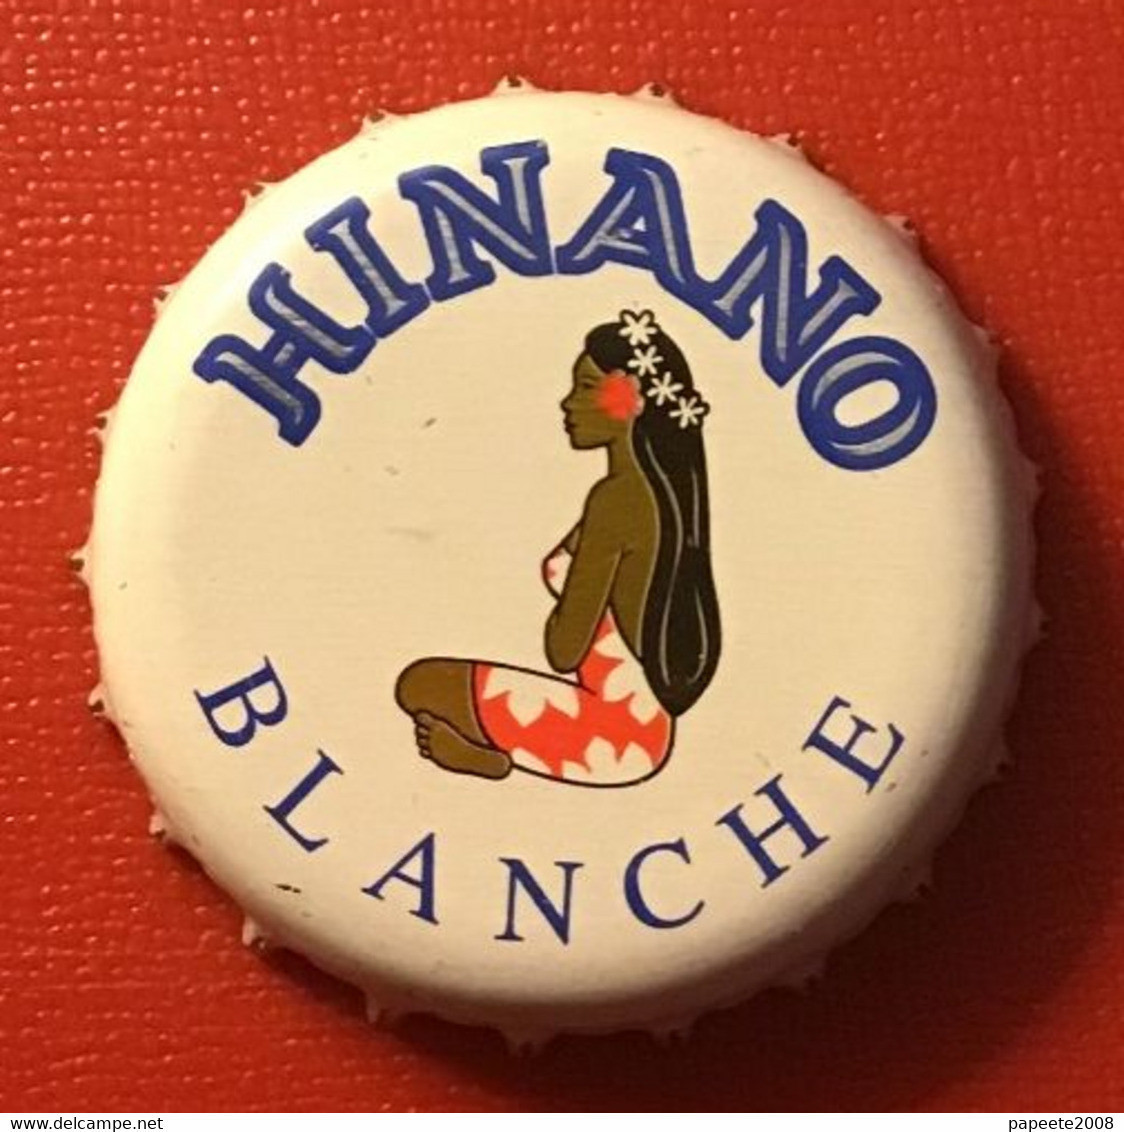 Polynésie Française - Tahiti / Capsule De Hinano " Blanche " - Bière / Janvier 2021 - Bière